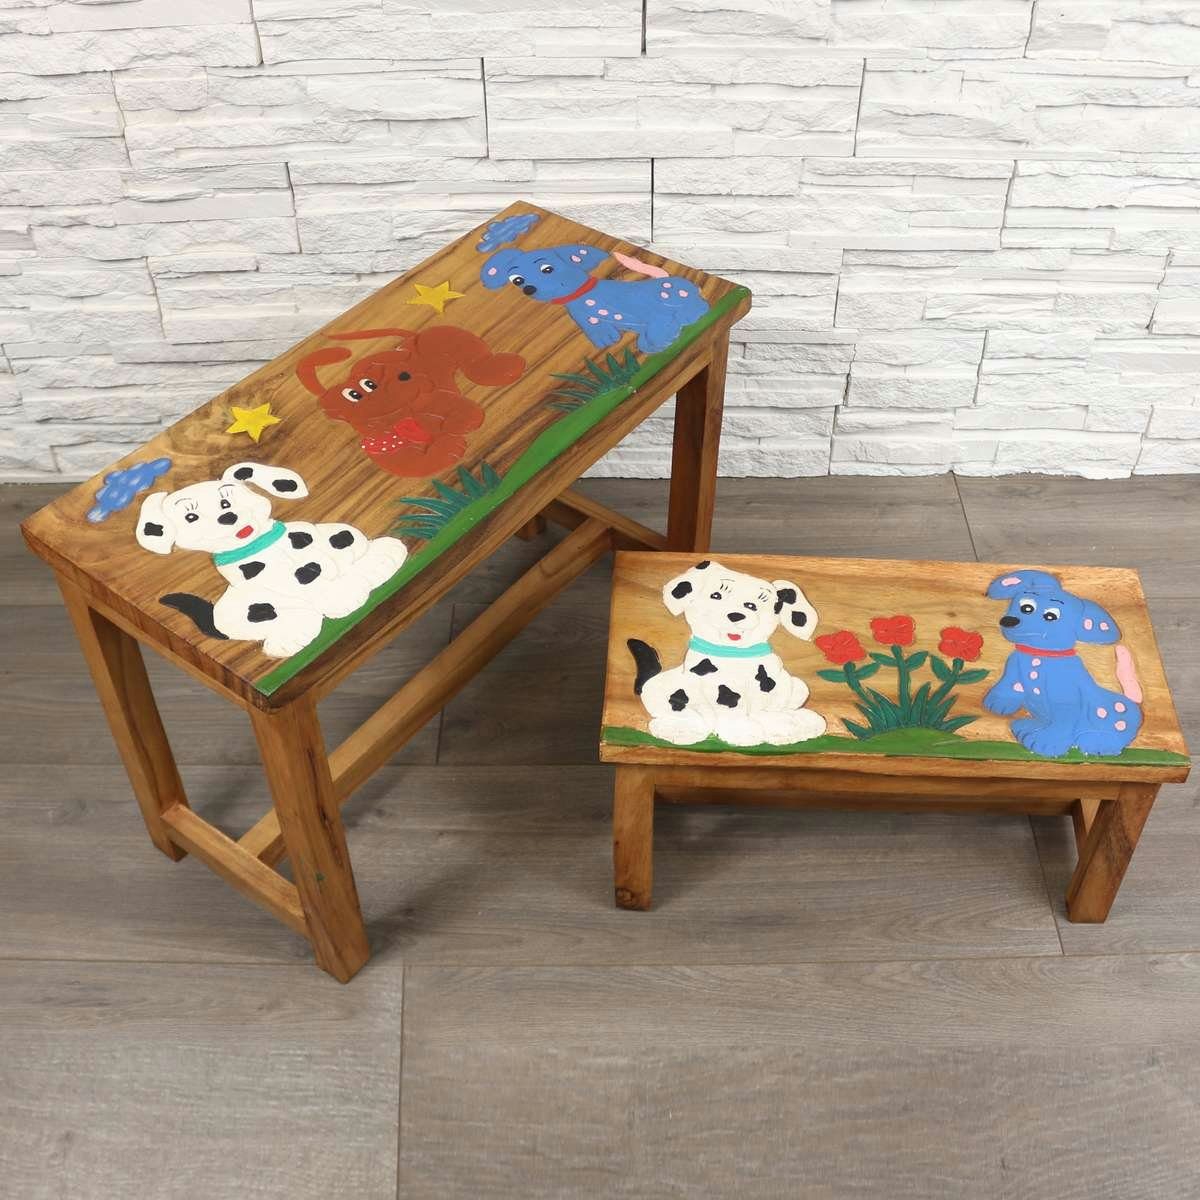 Set traditionelle Hund, Kindermöbel Tisch Ursprungsland Oriental im Herstellung mit Handarbeit in Kindersitzgruppe Galerie Bank